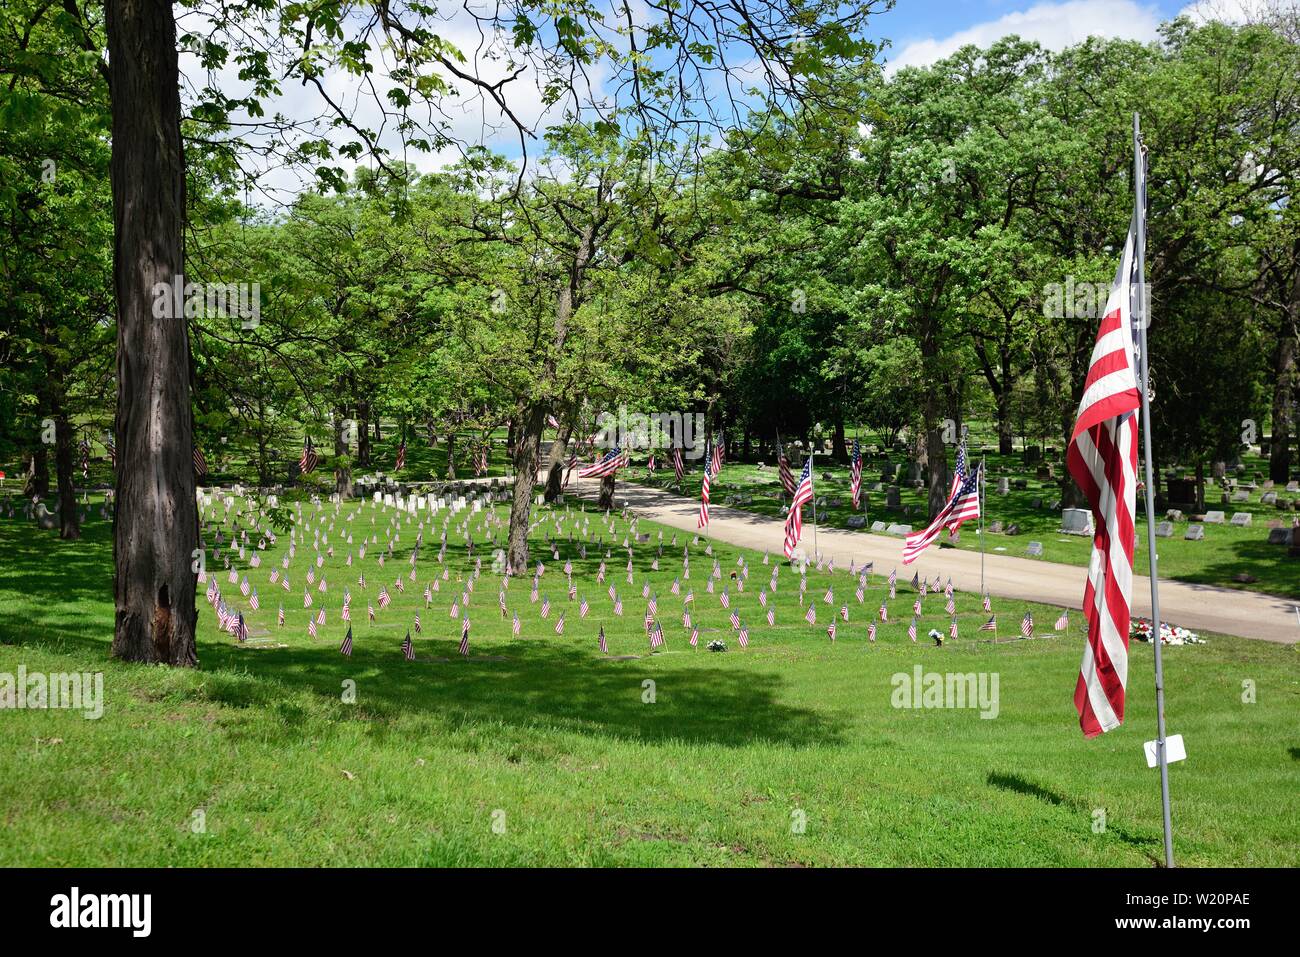 Elgin, Illinois, USA. American flags dans un cimetière où les routes de plus petites versions drapeau parsèment la sépulture des anciens combattants. Les drapeaux sont sur l'affichage Banque D'Images